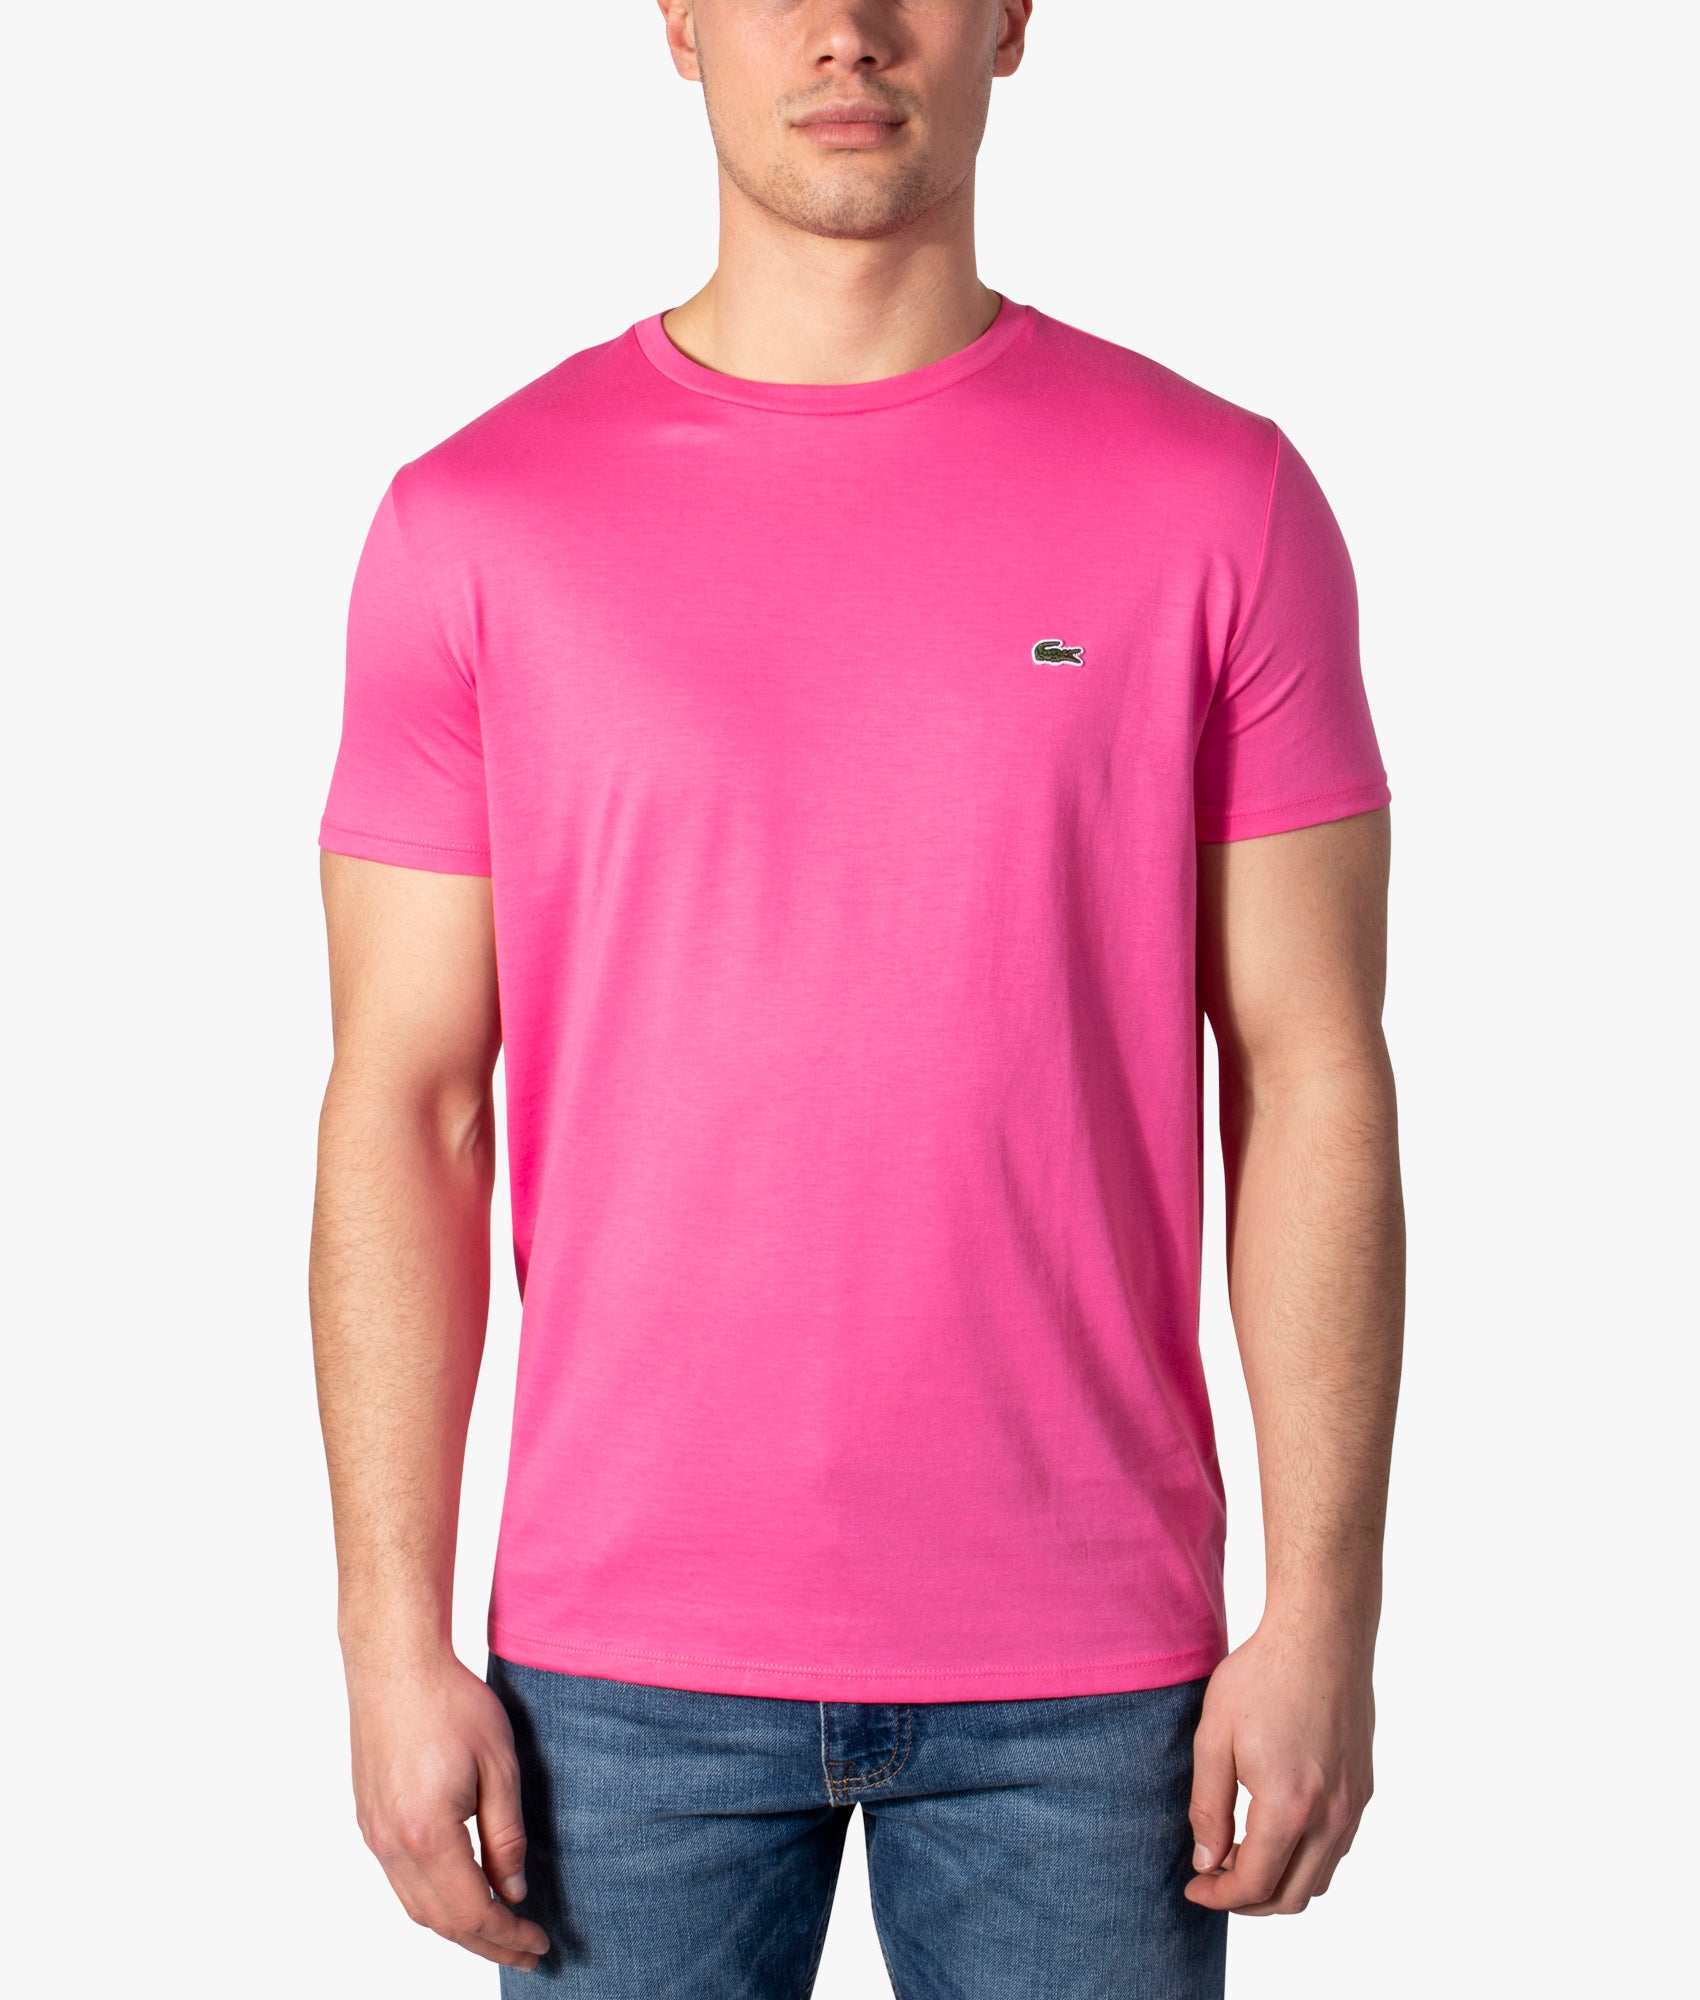 Croc | Pima Lacoste EQVVS | Cotton Pink T-shirt Logo